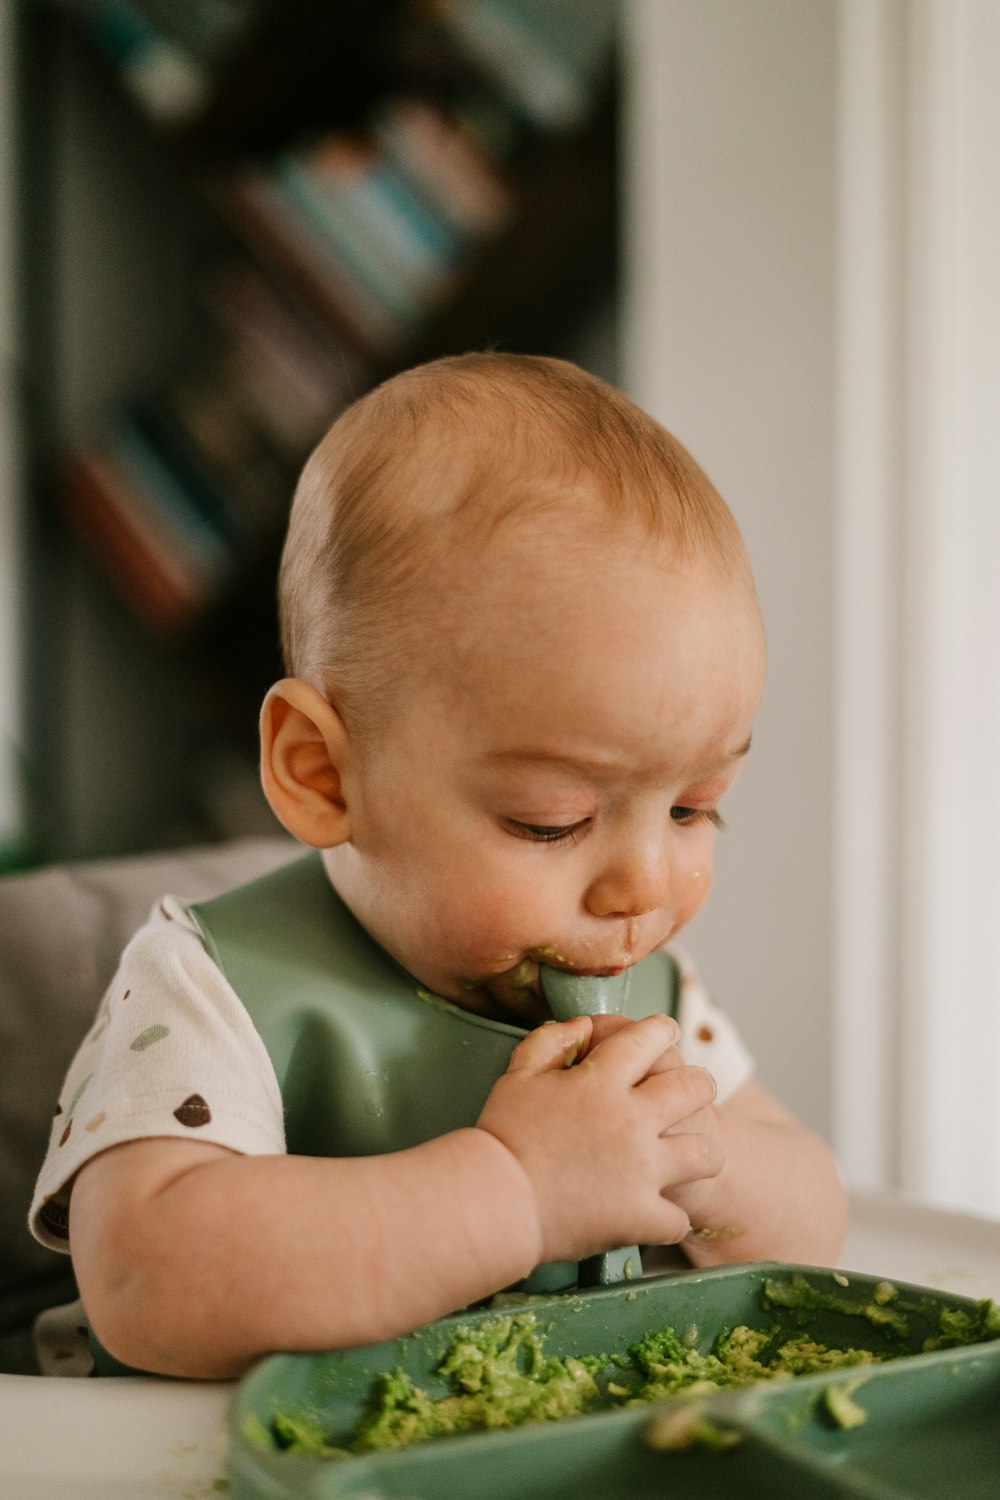 un bébé mangeant du brocoli